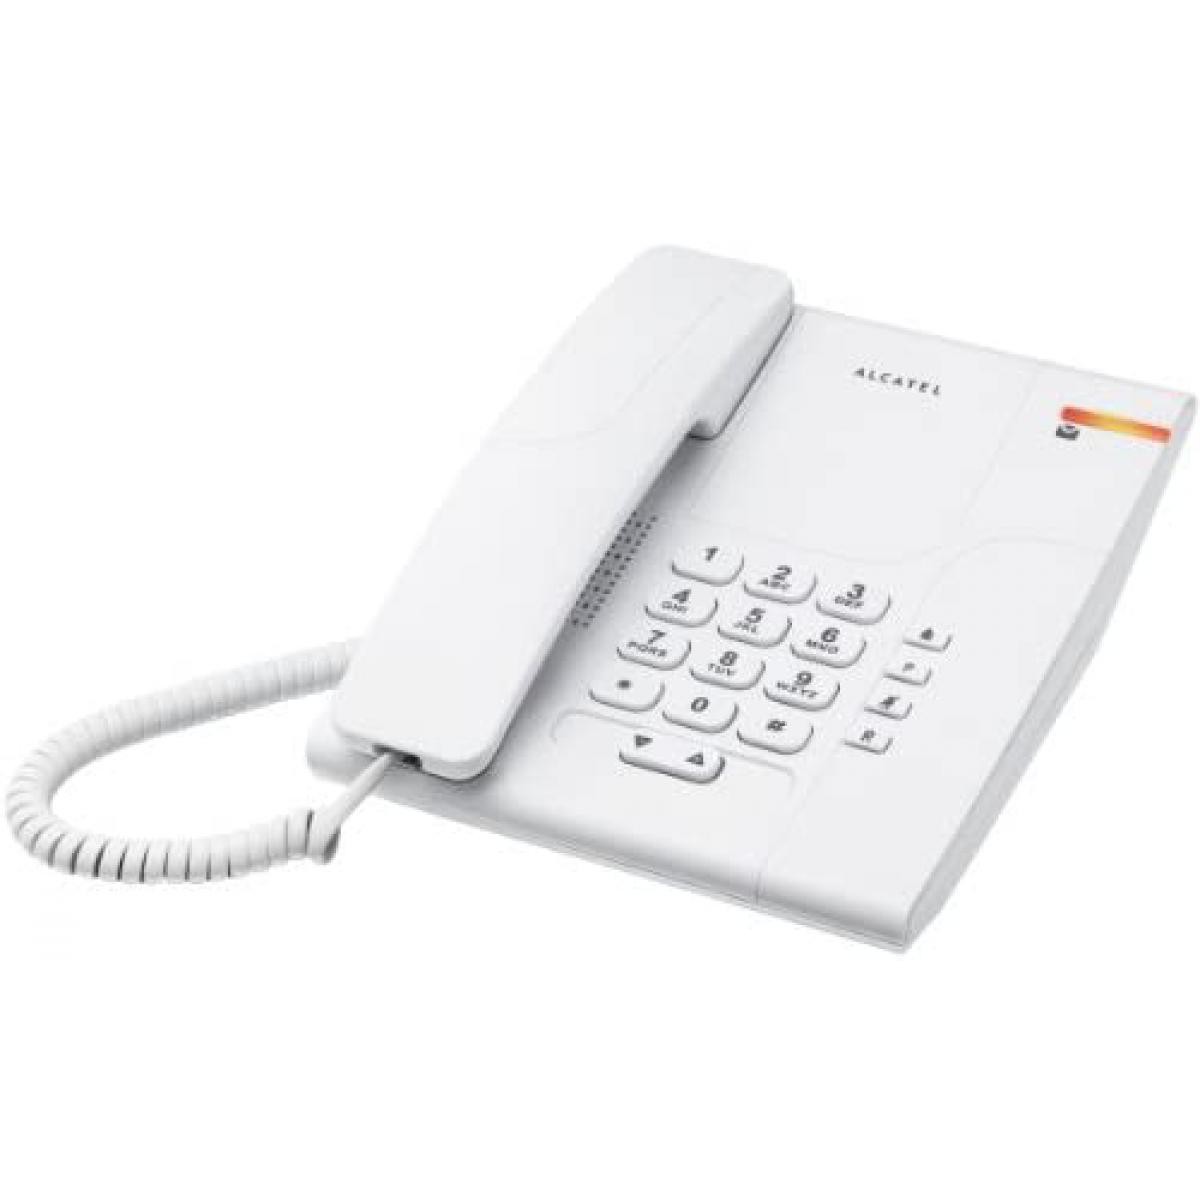 Alcatel - telephone filaire analogique blanc - Téléphone fixe filaire